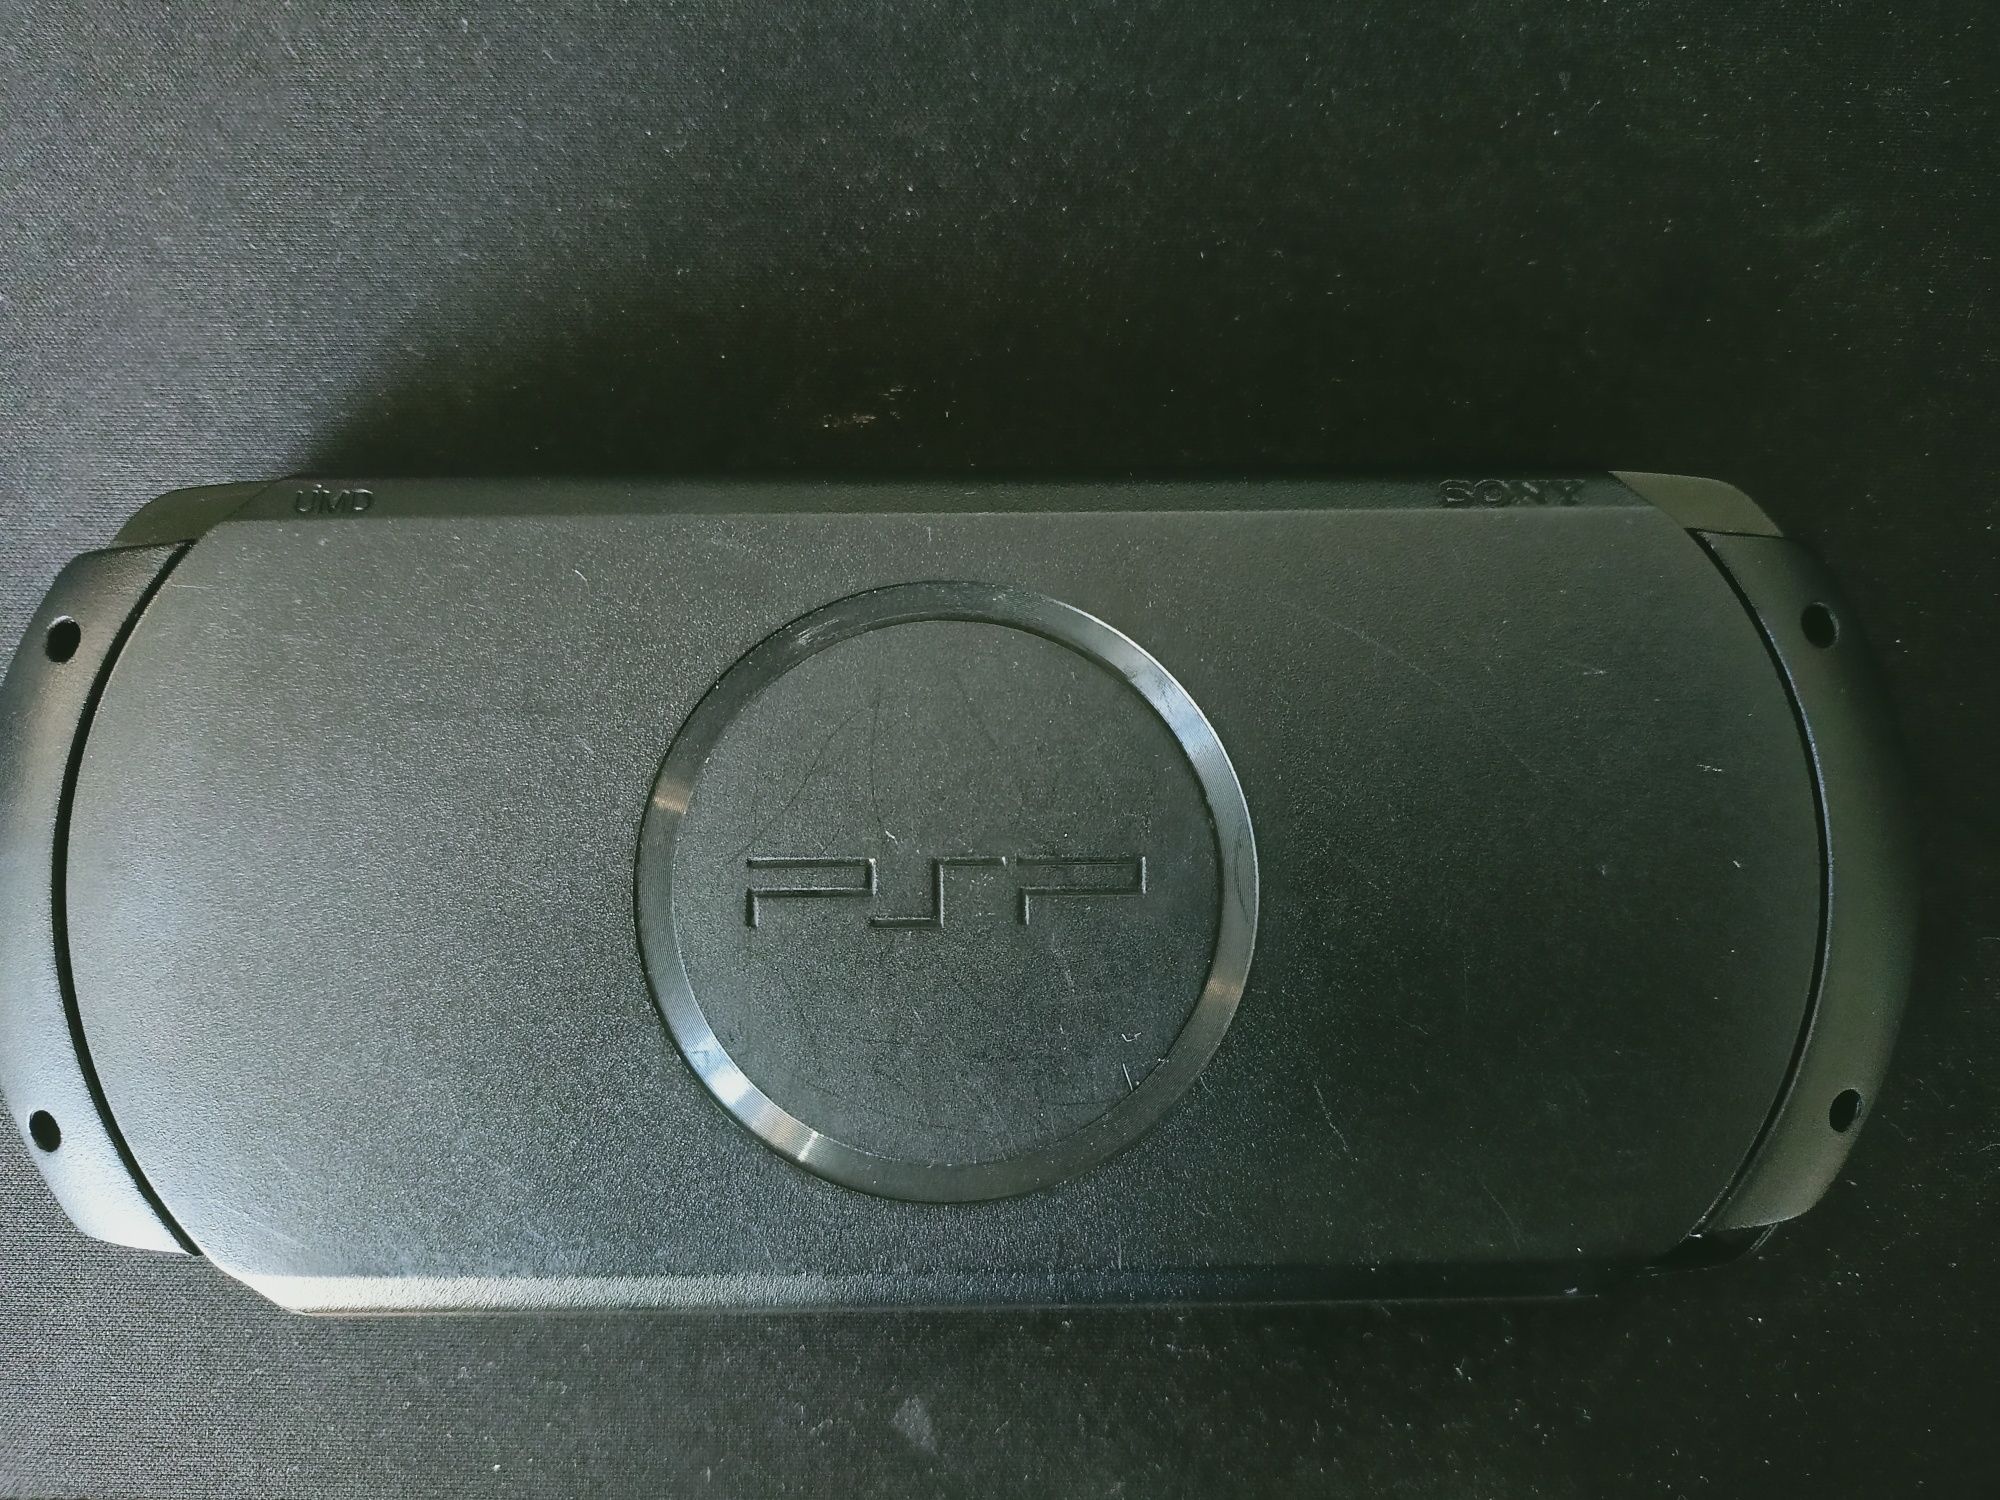 Konsola PSP e1004